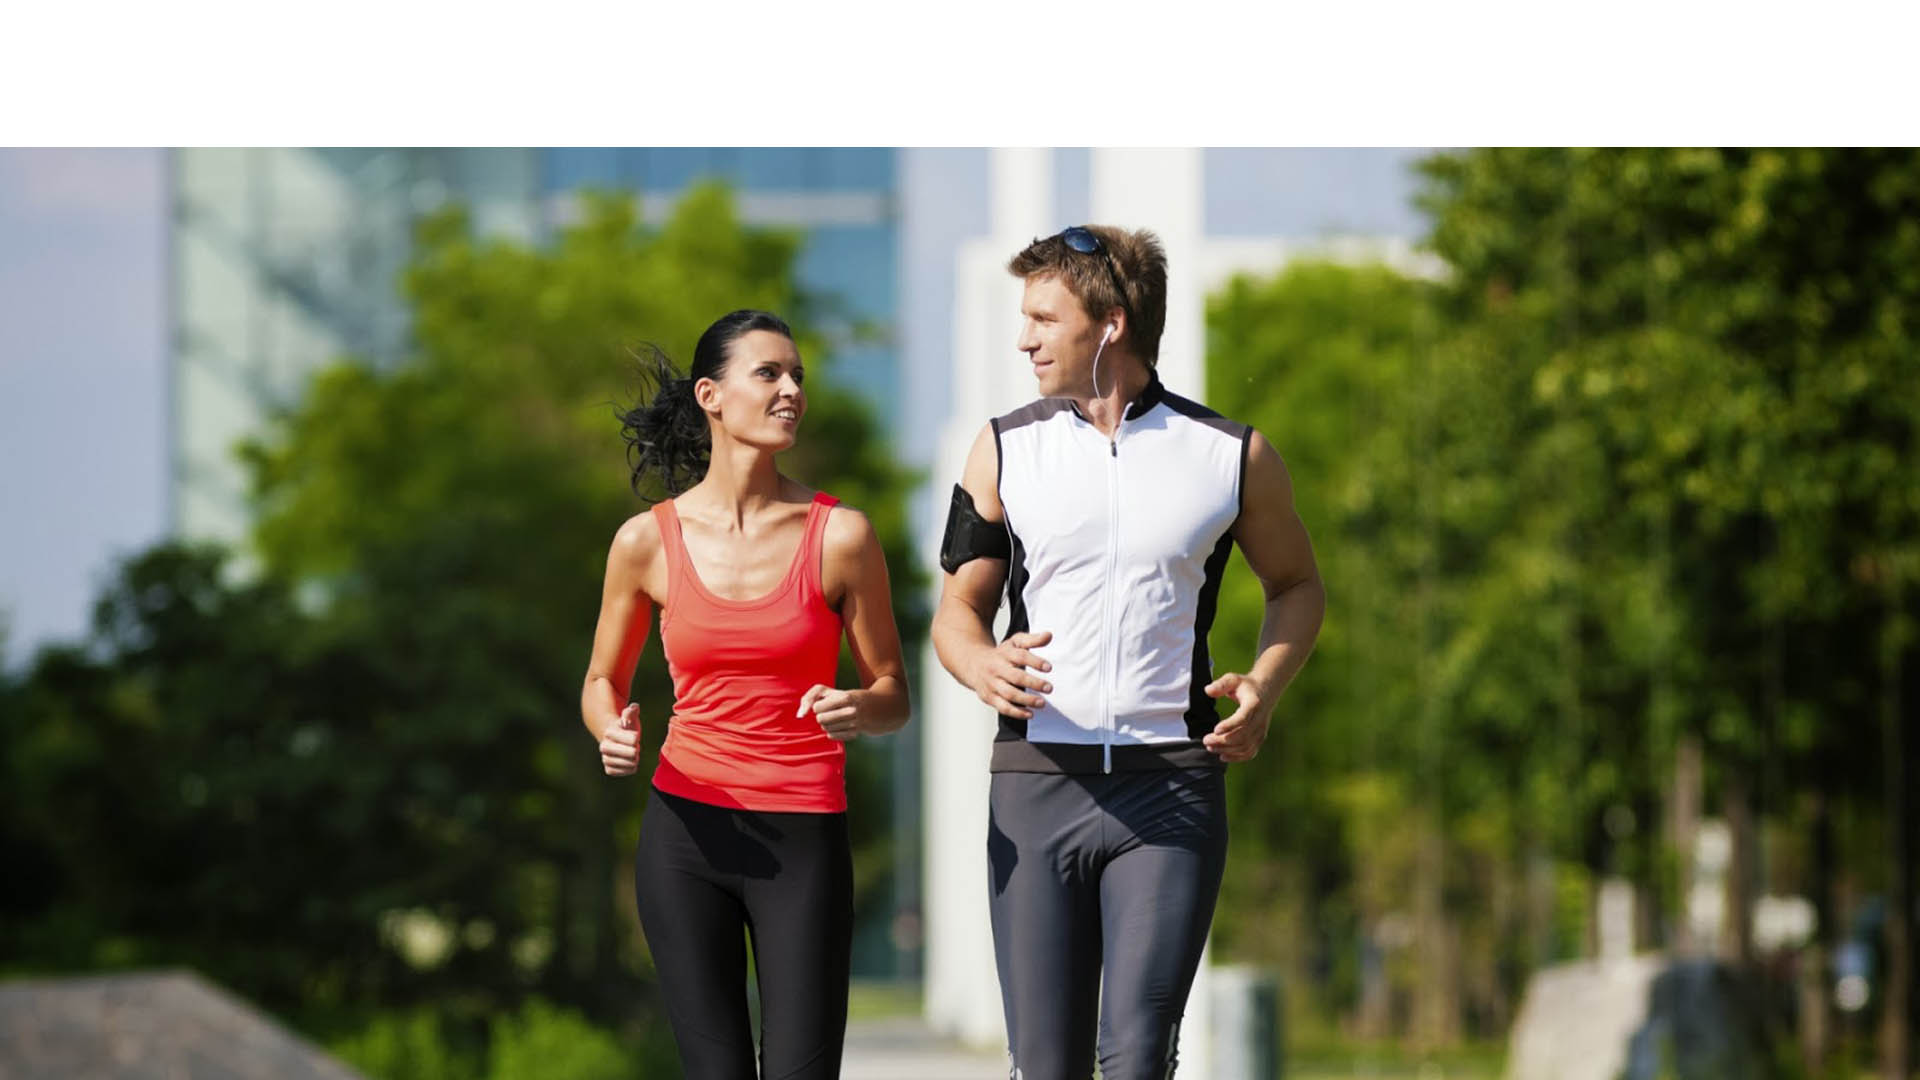 Trotar o correr puede causarte estrés, metabolismo inestable y hasta lesiones en piernas, rodillas y articulaciones